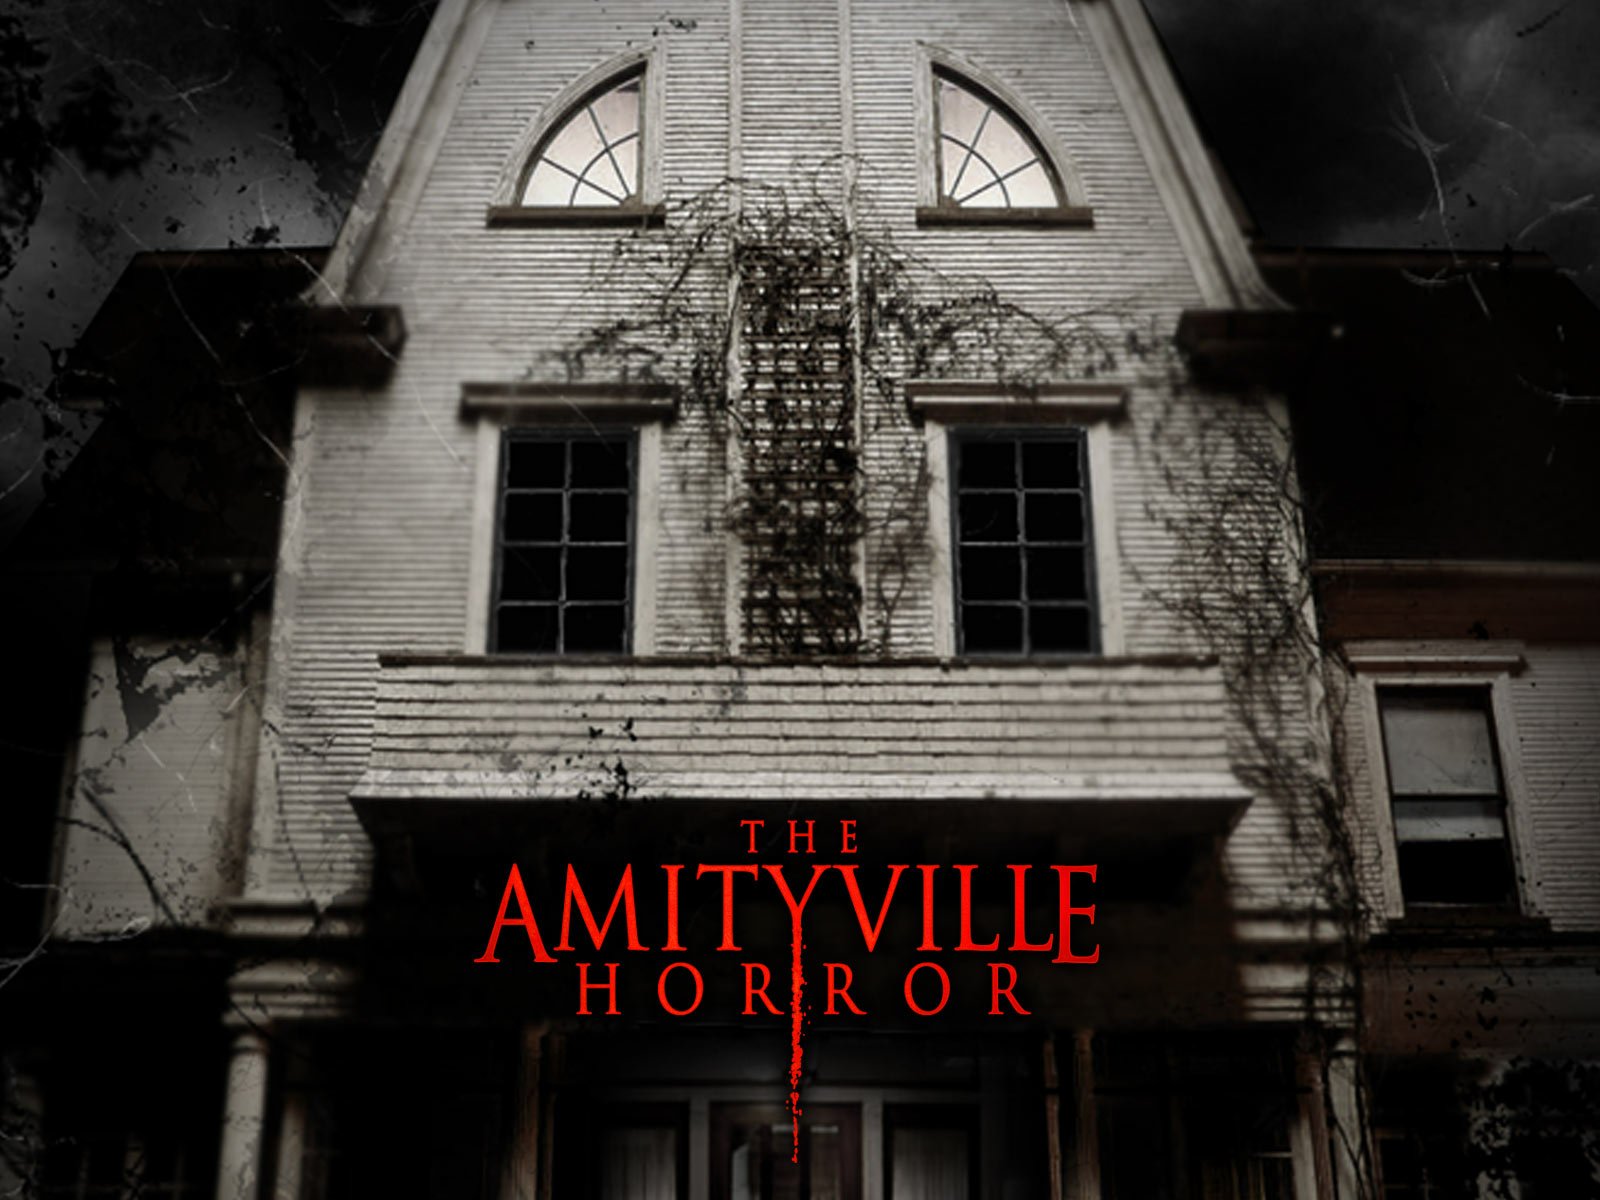 1979 The Amityville Horror